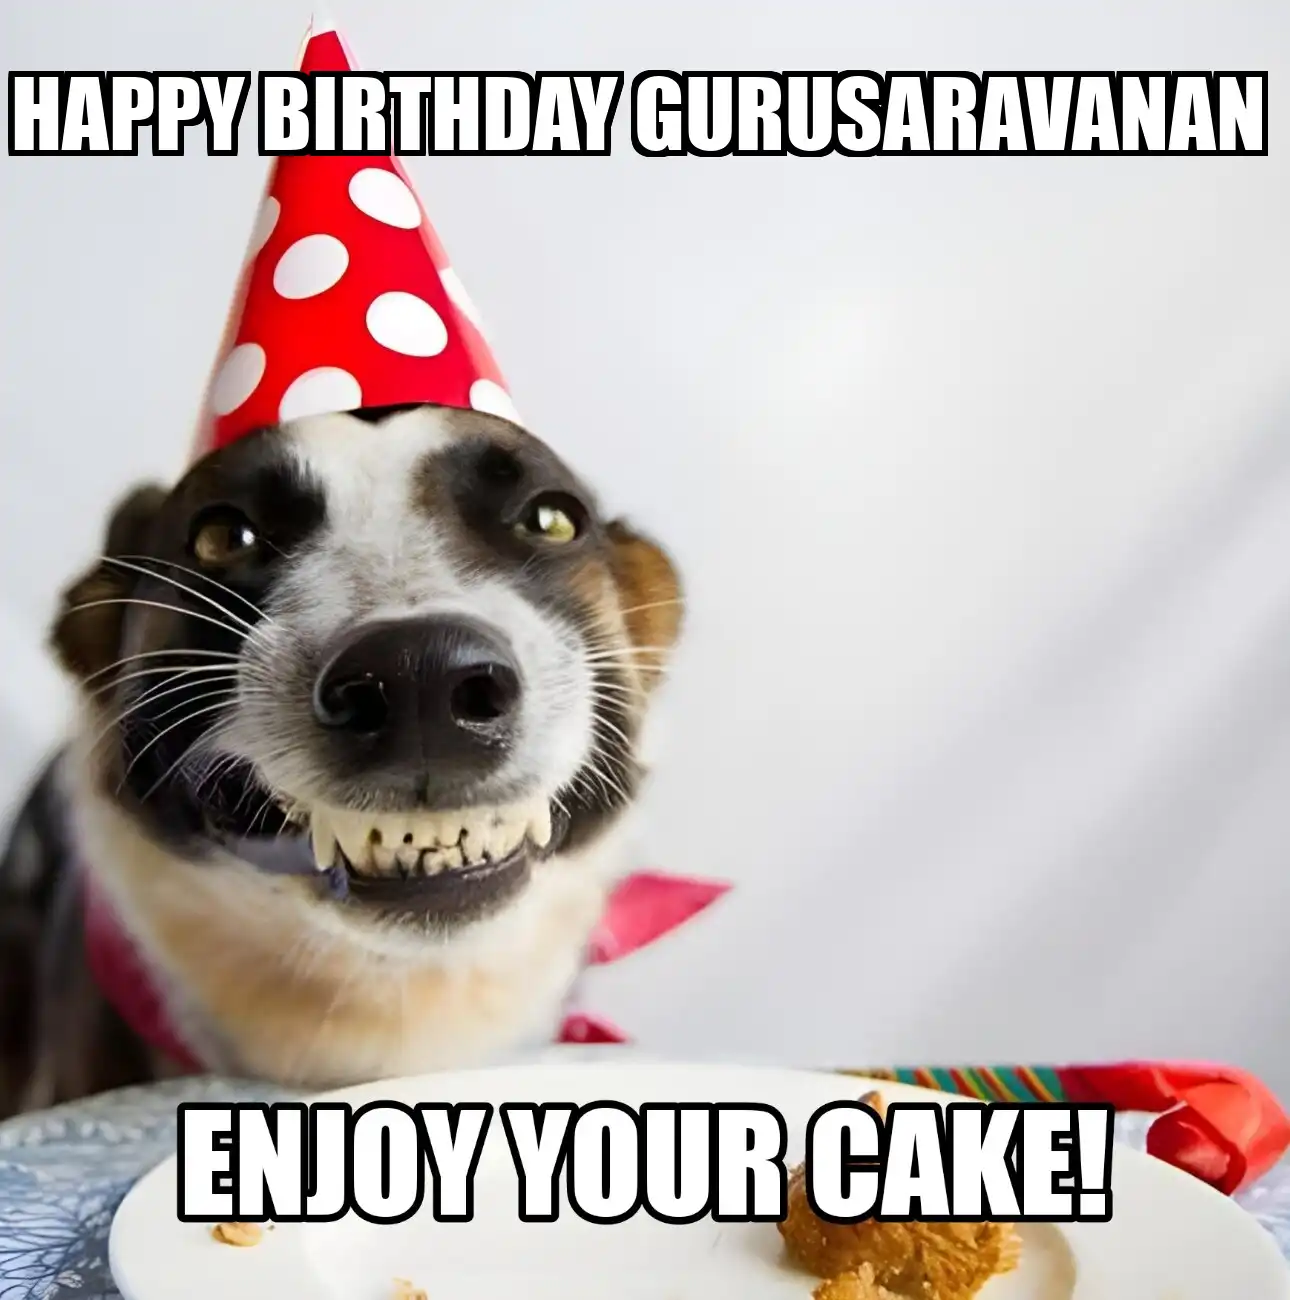 Happy Birthday Gurusaravanan Enjoy Your Cake Dog Meme